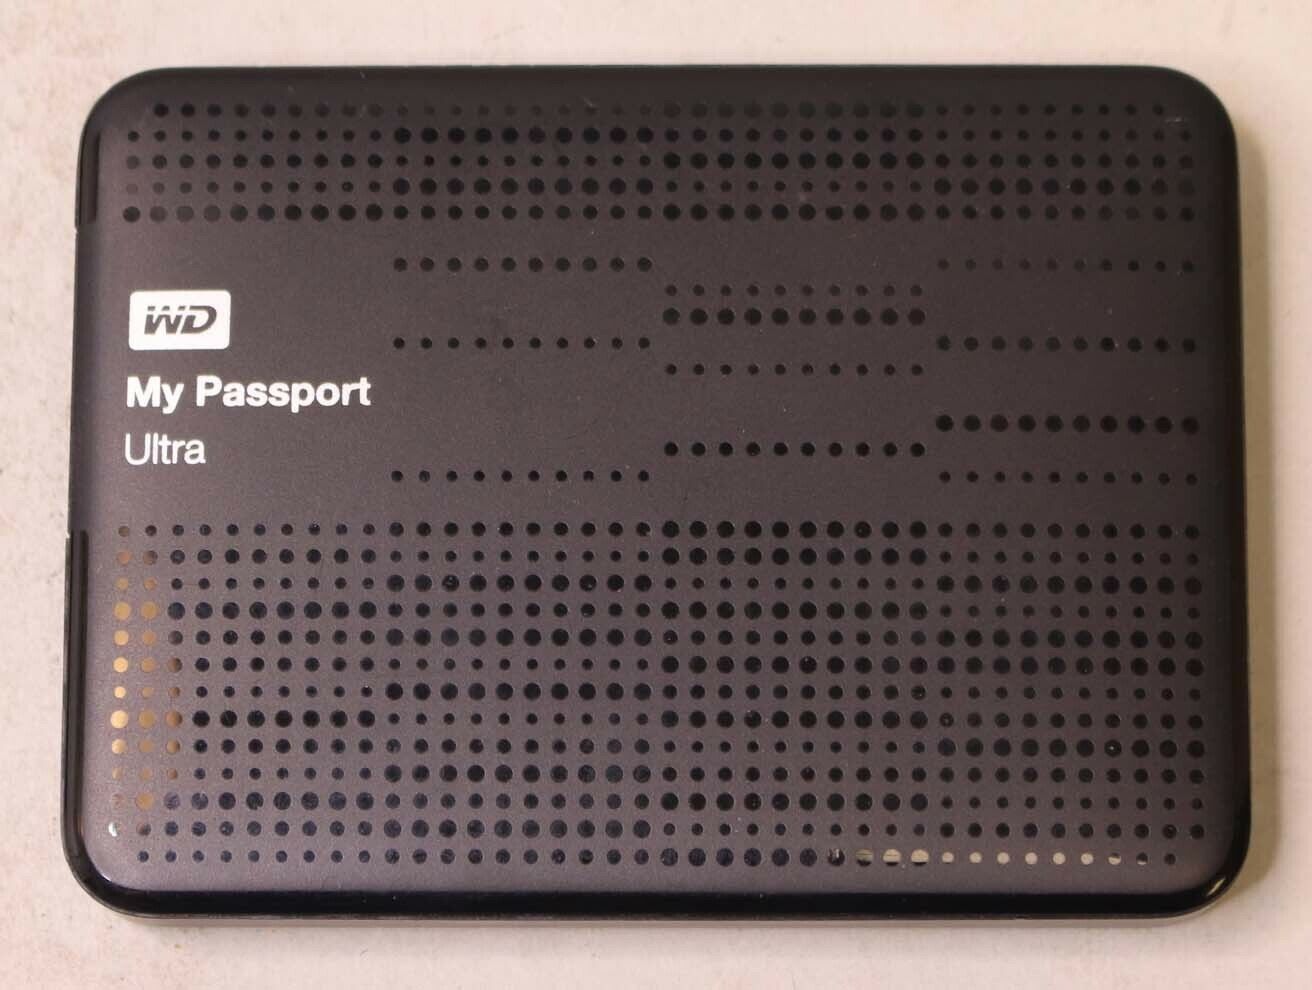 WESTERN DIGITAL MY PASSPORT ULTRA 1 TB USB PORTABLE HARD DRIVE - BLACK